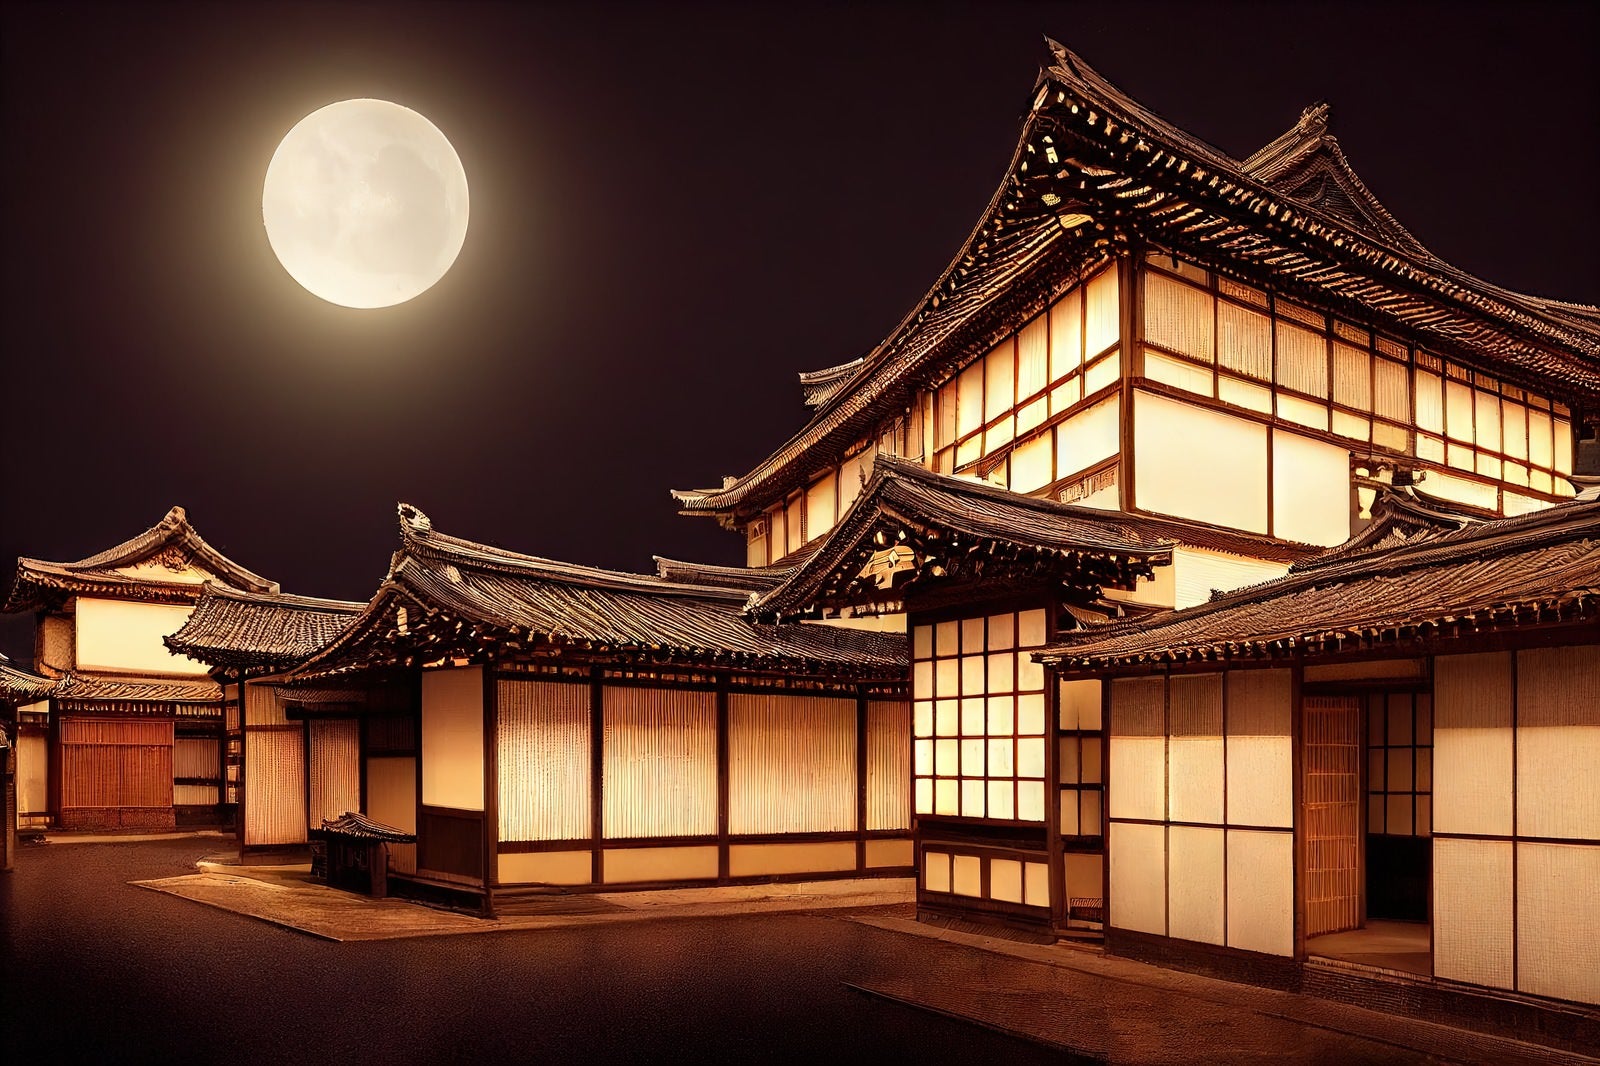 「満月に照らされた日本家屋」の写真